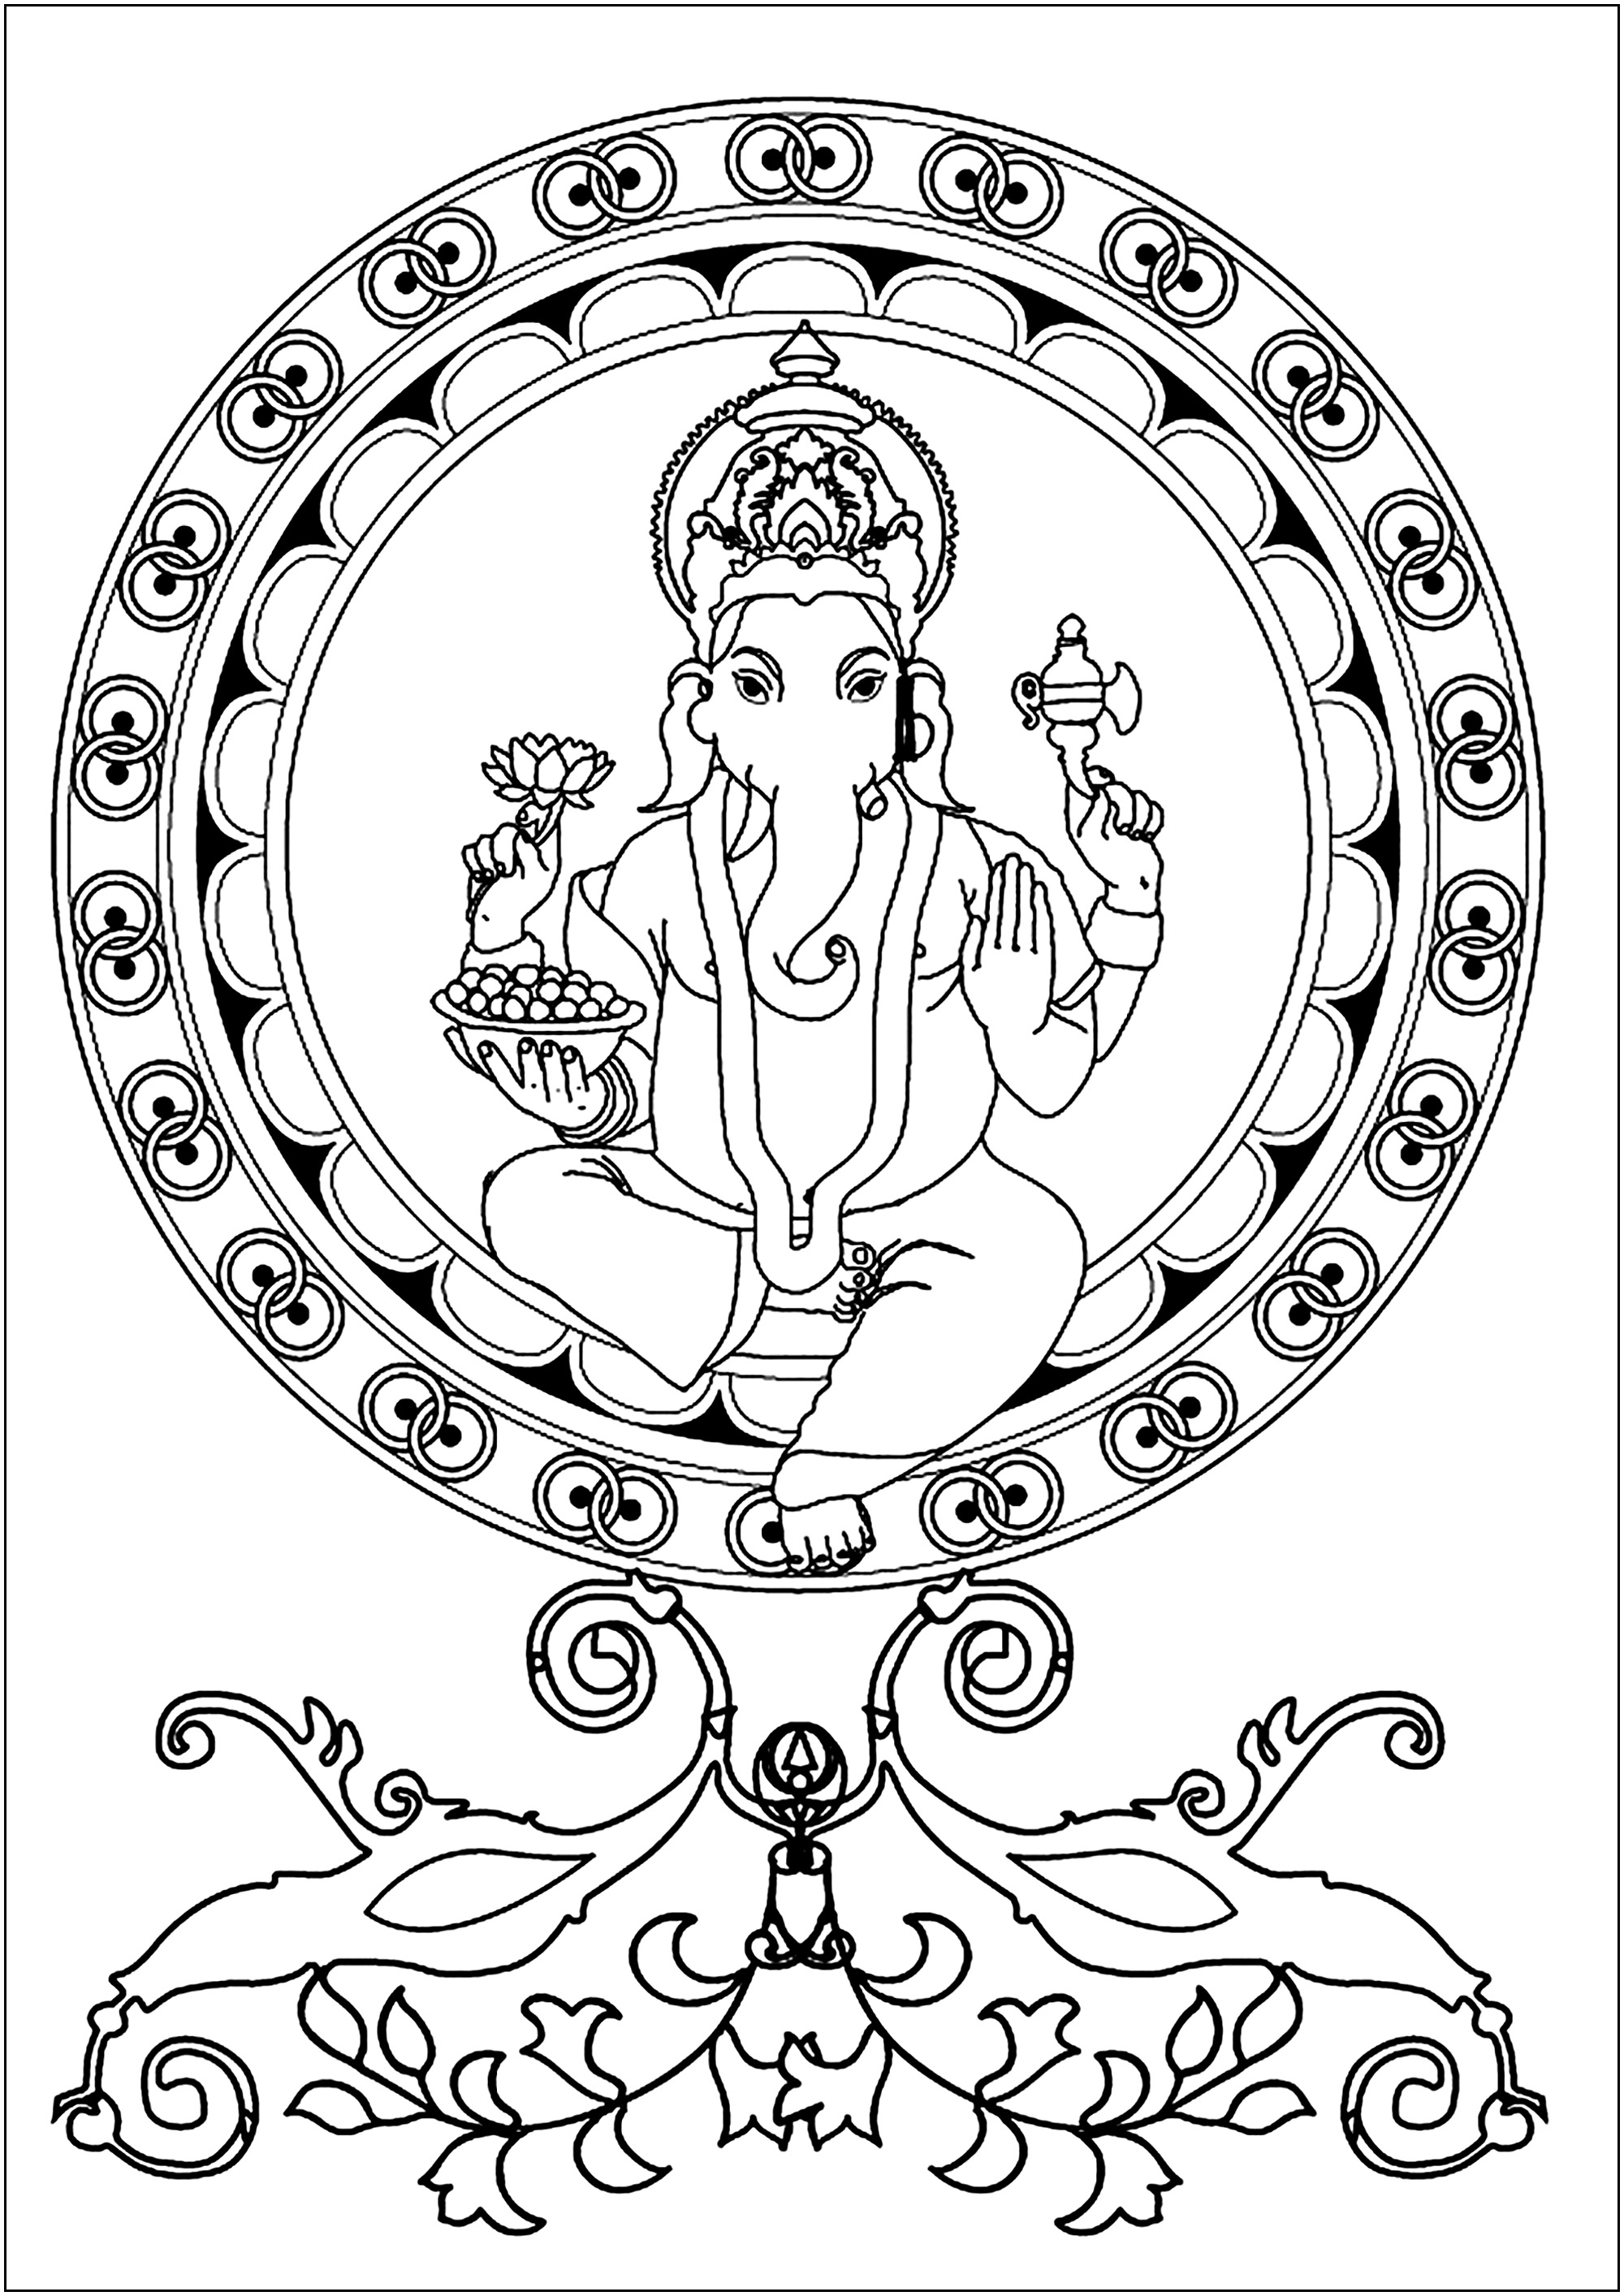 Ganesh no centro de uma Mandala. Ganesh é uma divindade hindu amplamente venerada como o deus da sabedoria, da inteligência e da prosperidade.Representado com uma cabeça de elefante e um corpo humano, é frequentemente venerado no início dos rituais e cerimónias para remover obstáculos (Vighna) e trazer sucesso.